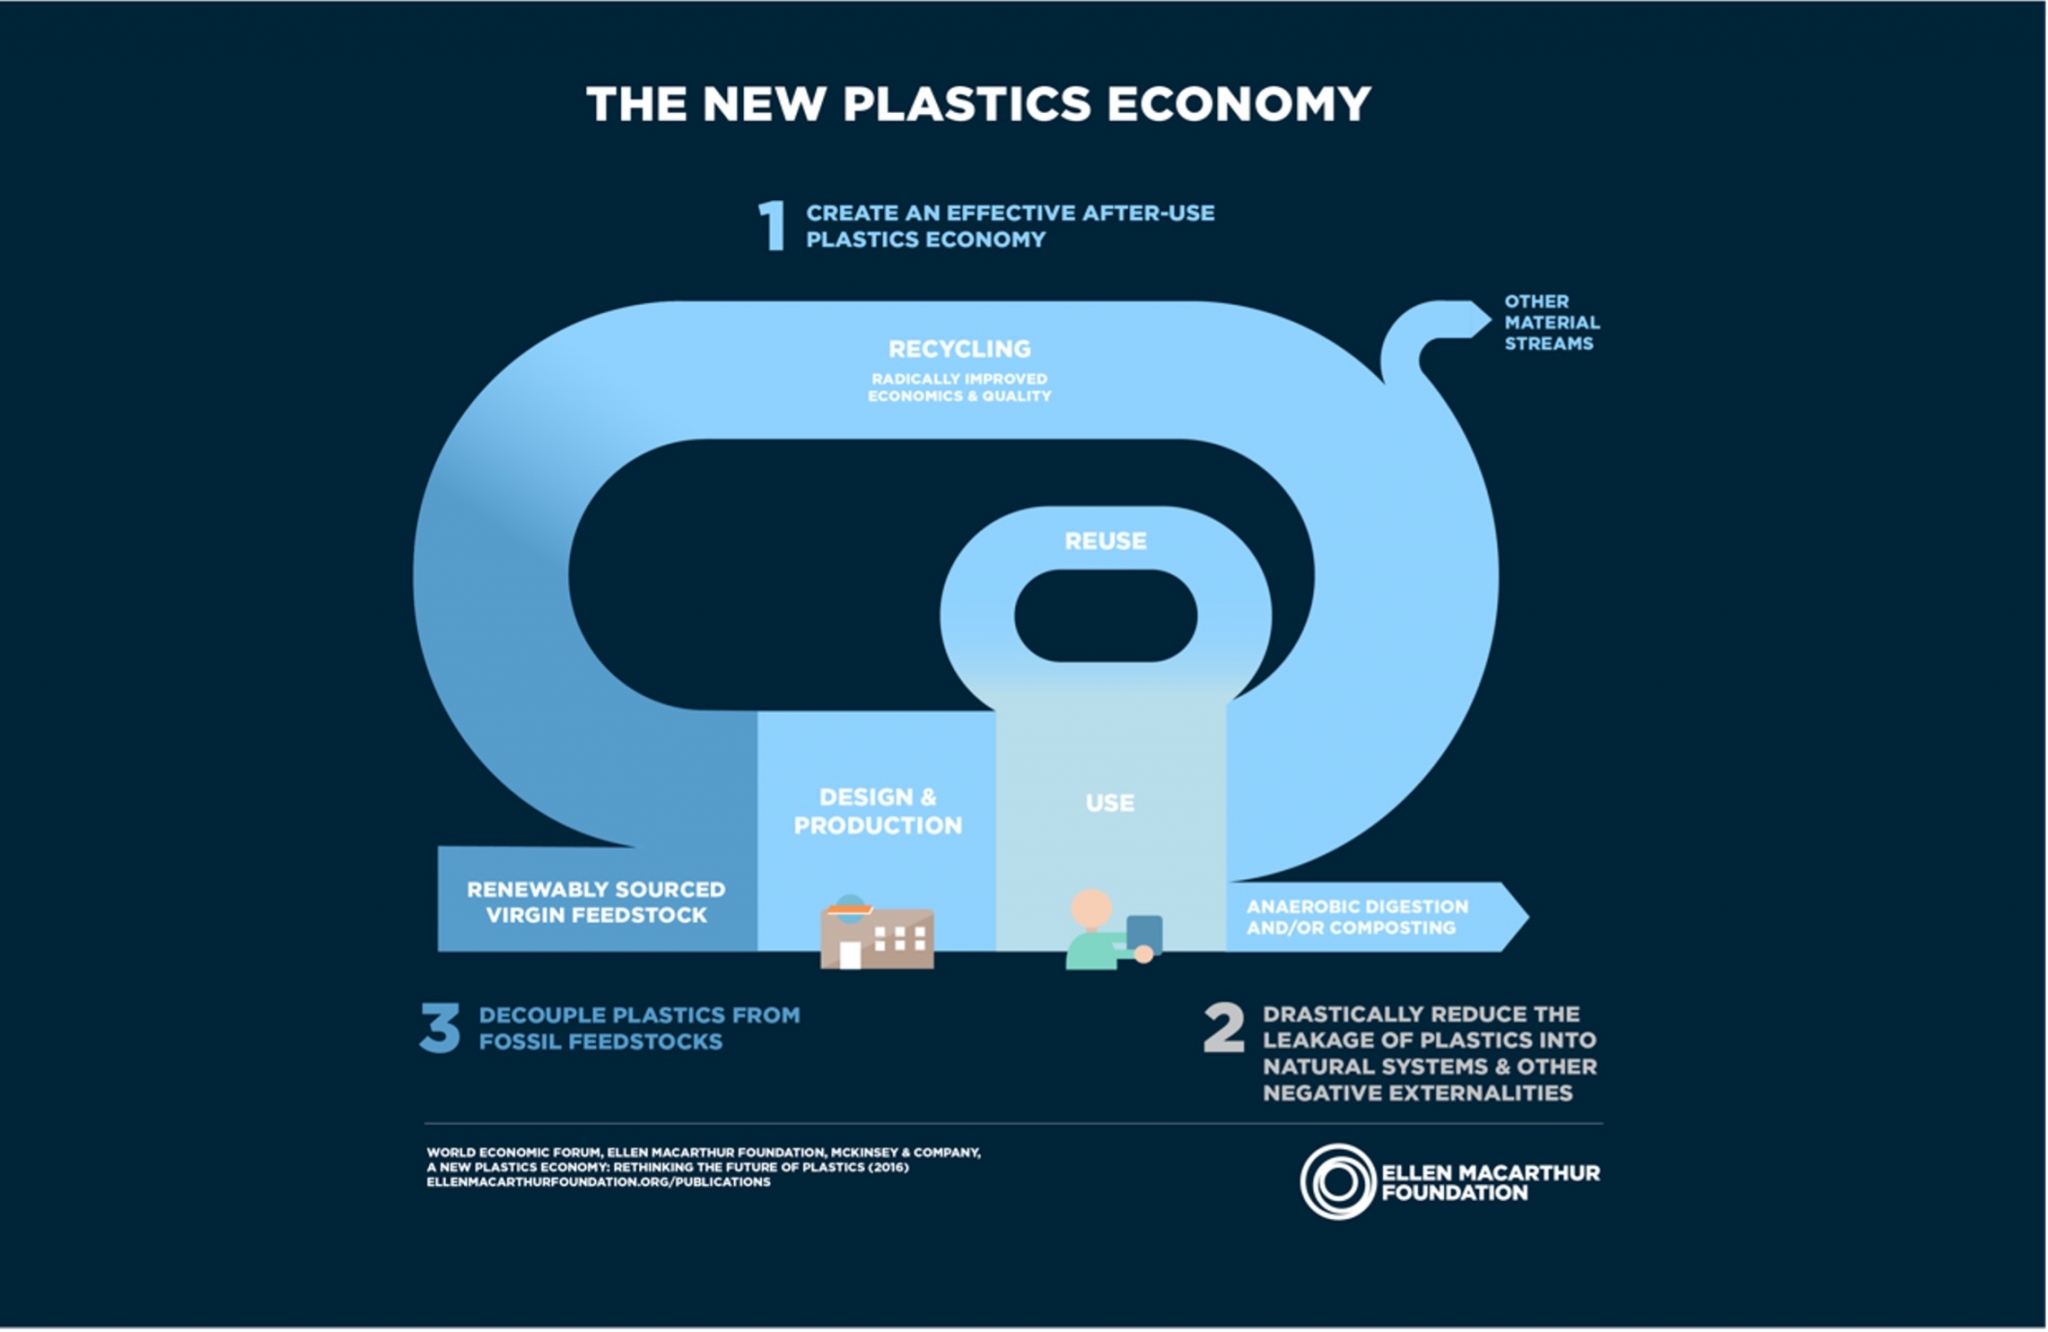 Flowchart of the new plastics economy